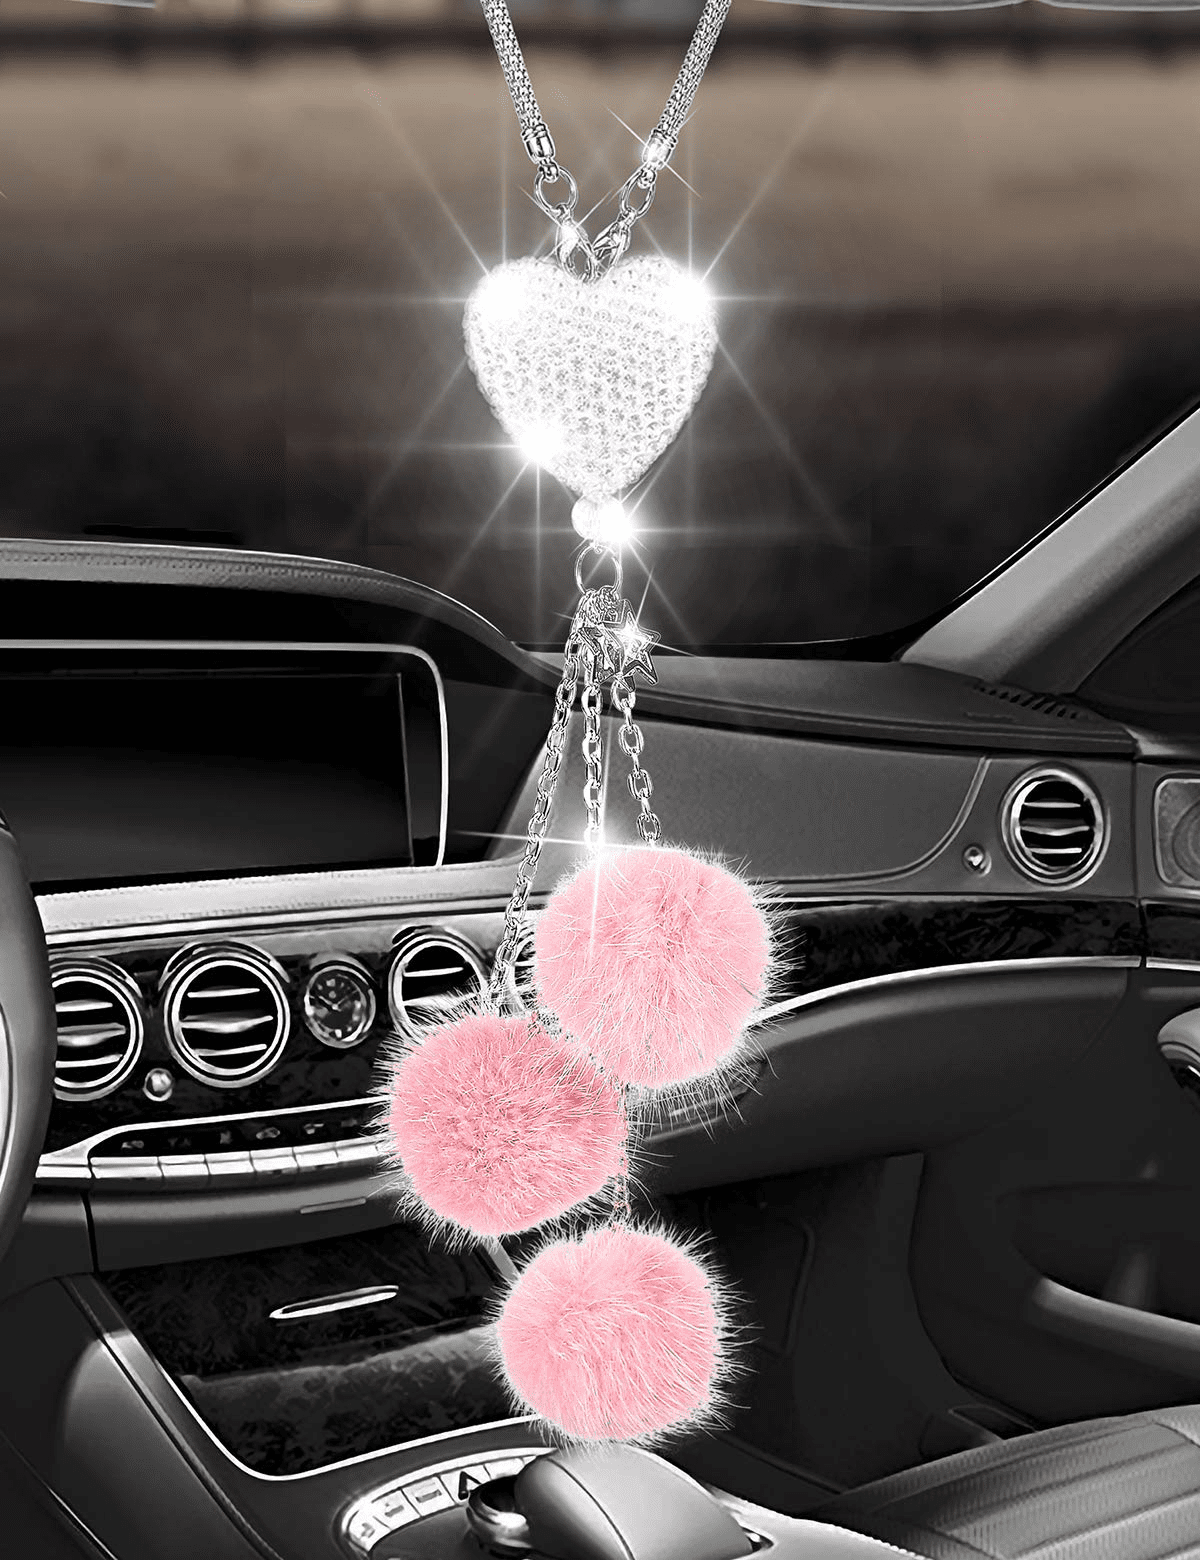  VOSAREA 4pcs Pendant Heart Decor Auto Car Accessories Womens  Car Accessories Car Crystal Pendant Car Decorations Car Mirror Accessories  Rear View Mirror Accessories Hanging Car Accessories : Automotive